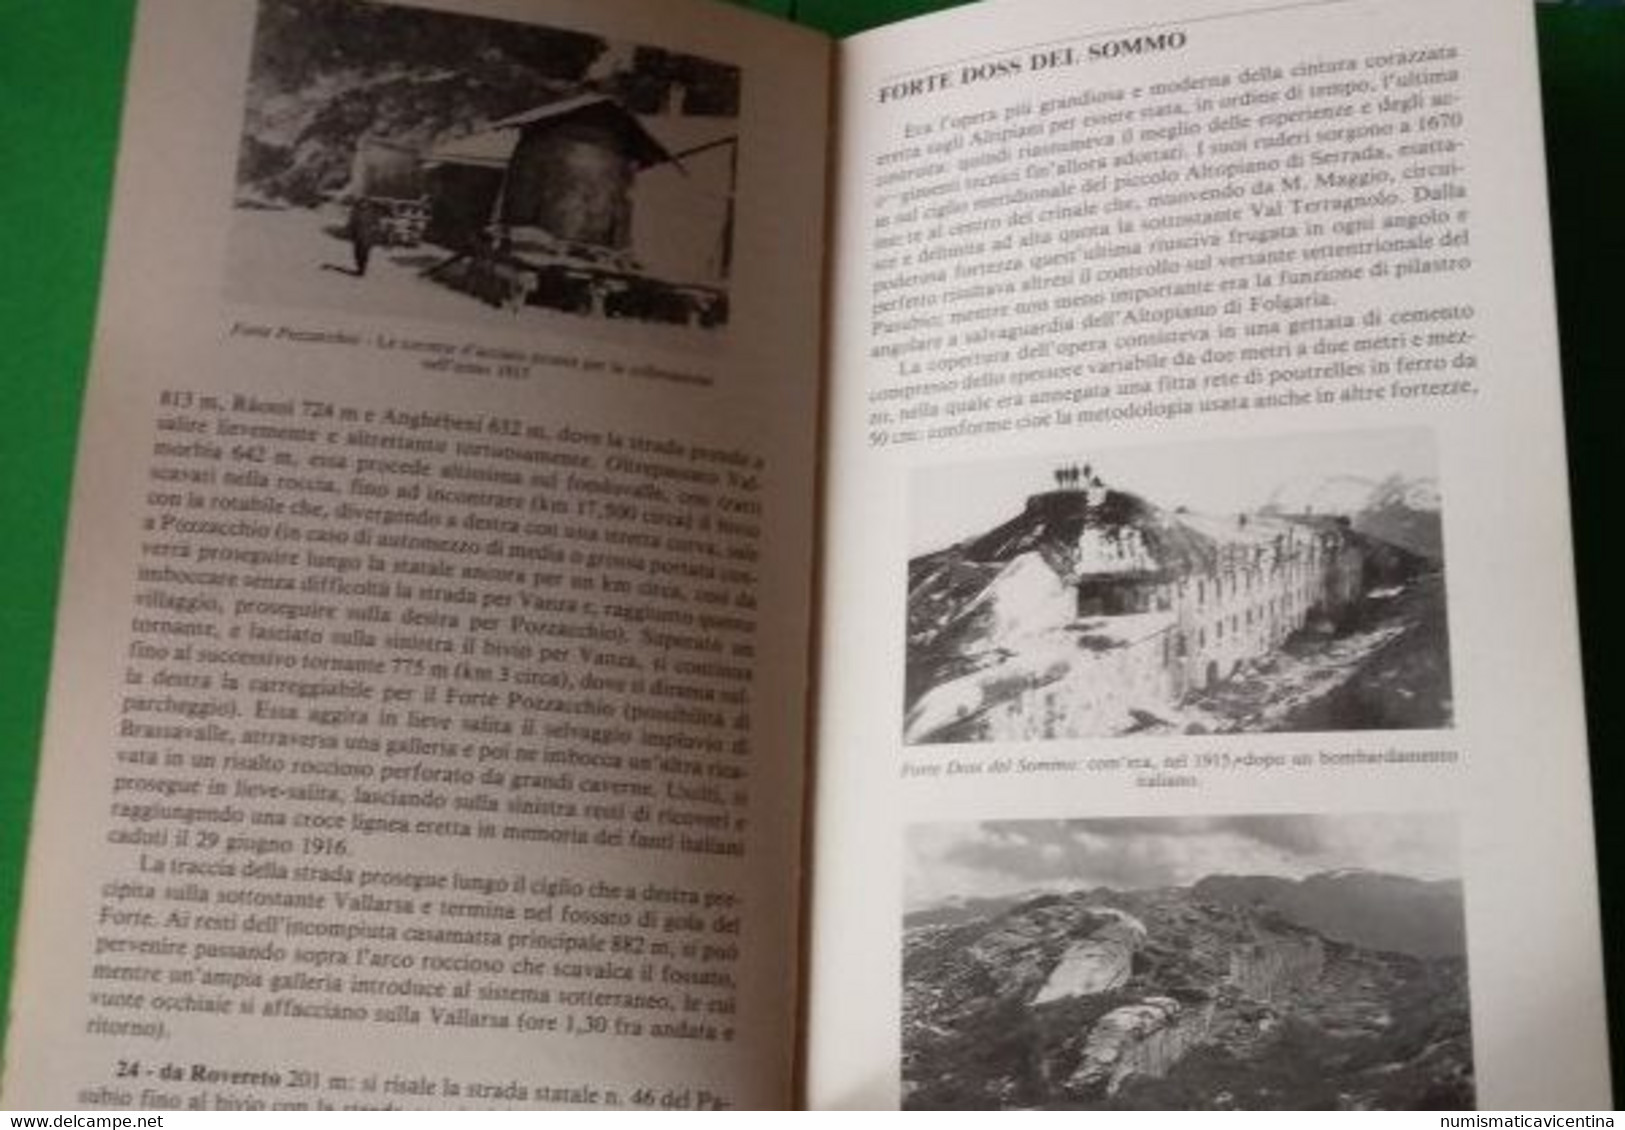 Guida alle fortezze degli Altipiani di Gianni Pieropan 1 WW les forts de la 1 WW the forts of the 1WW vs Austria